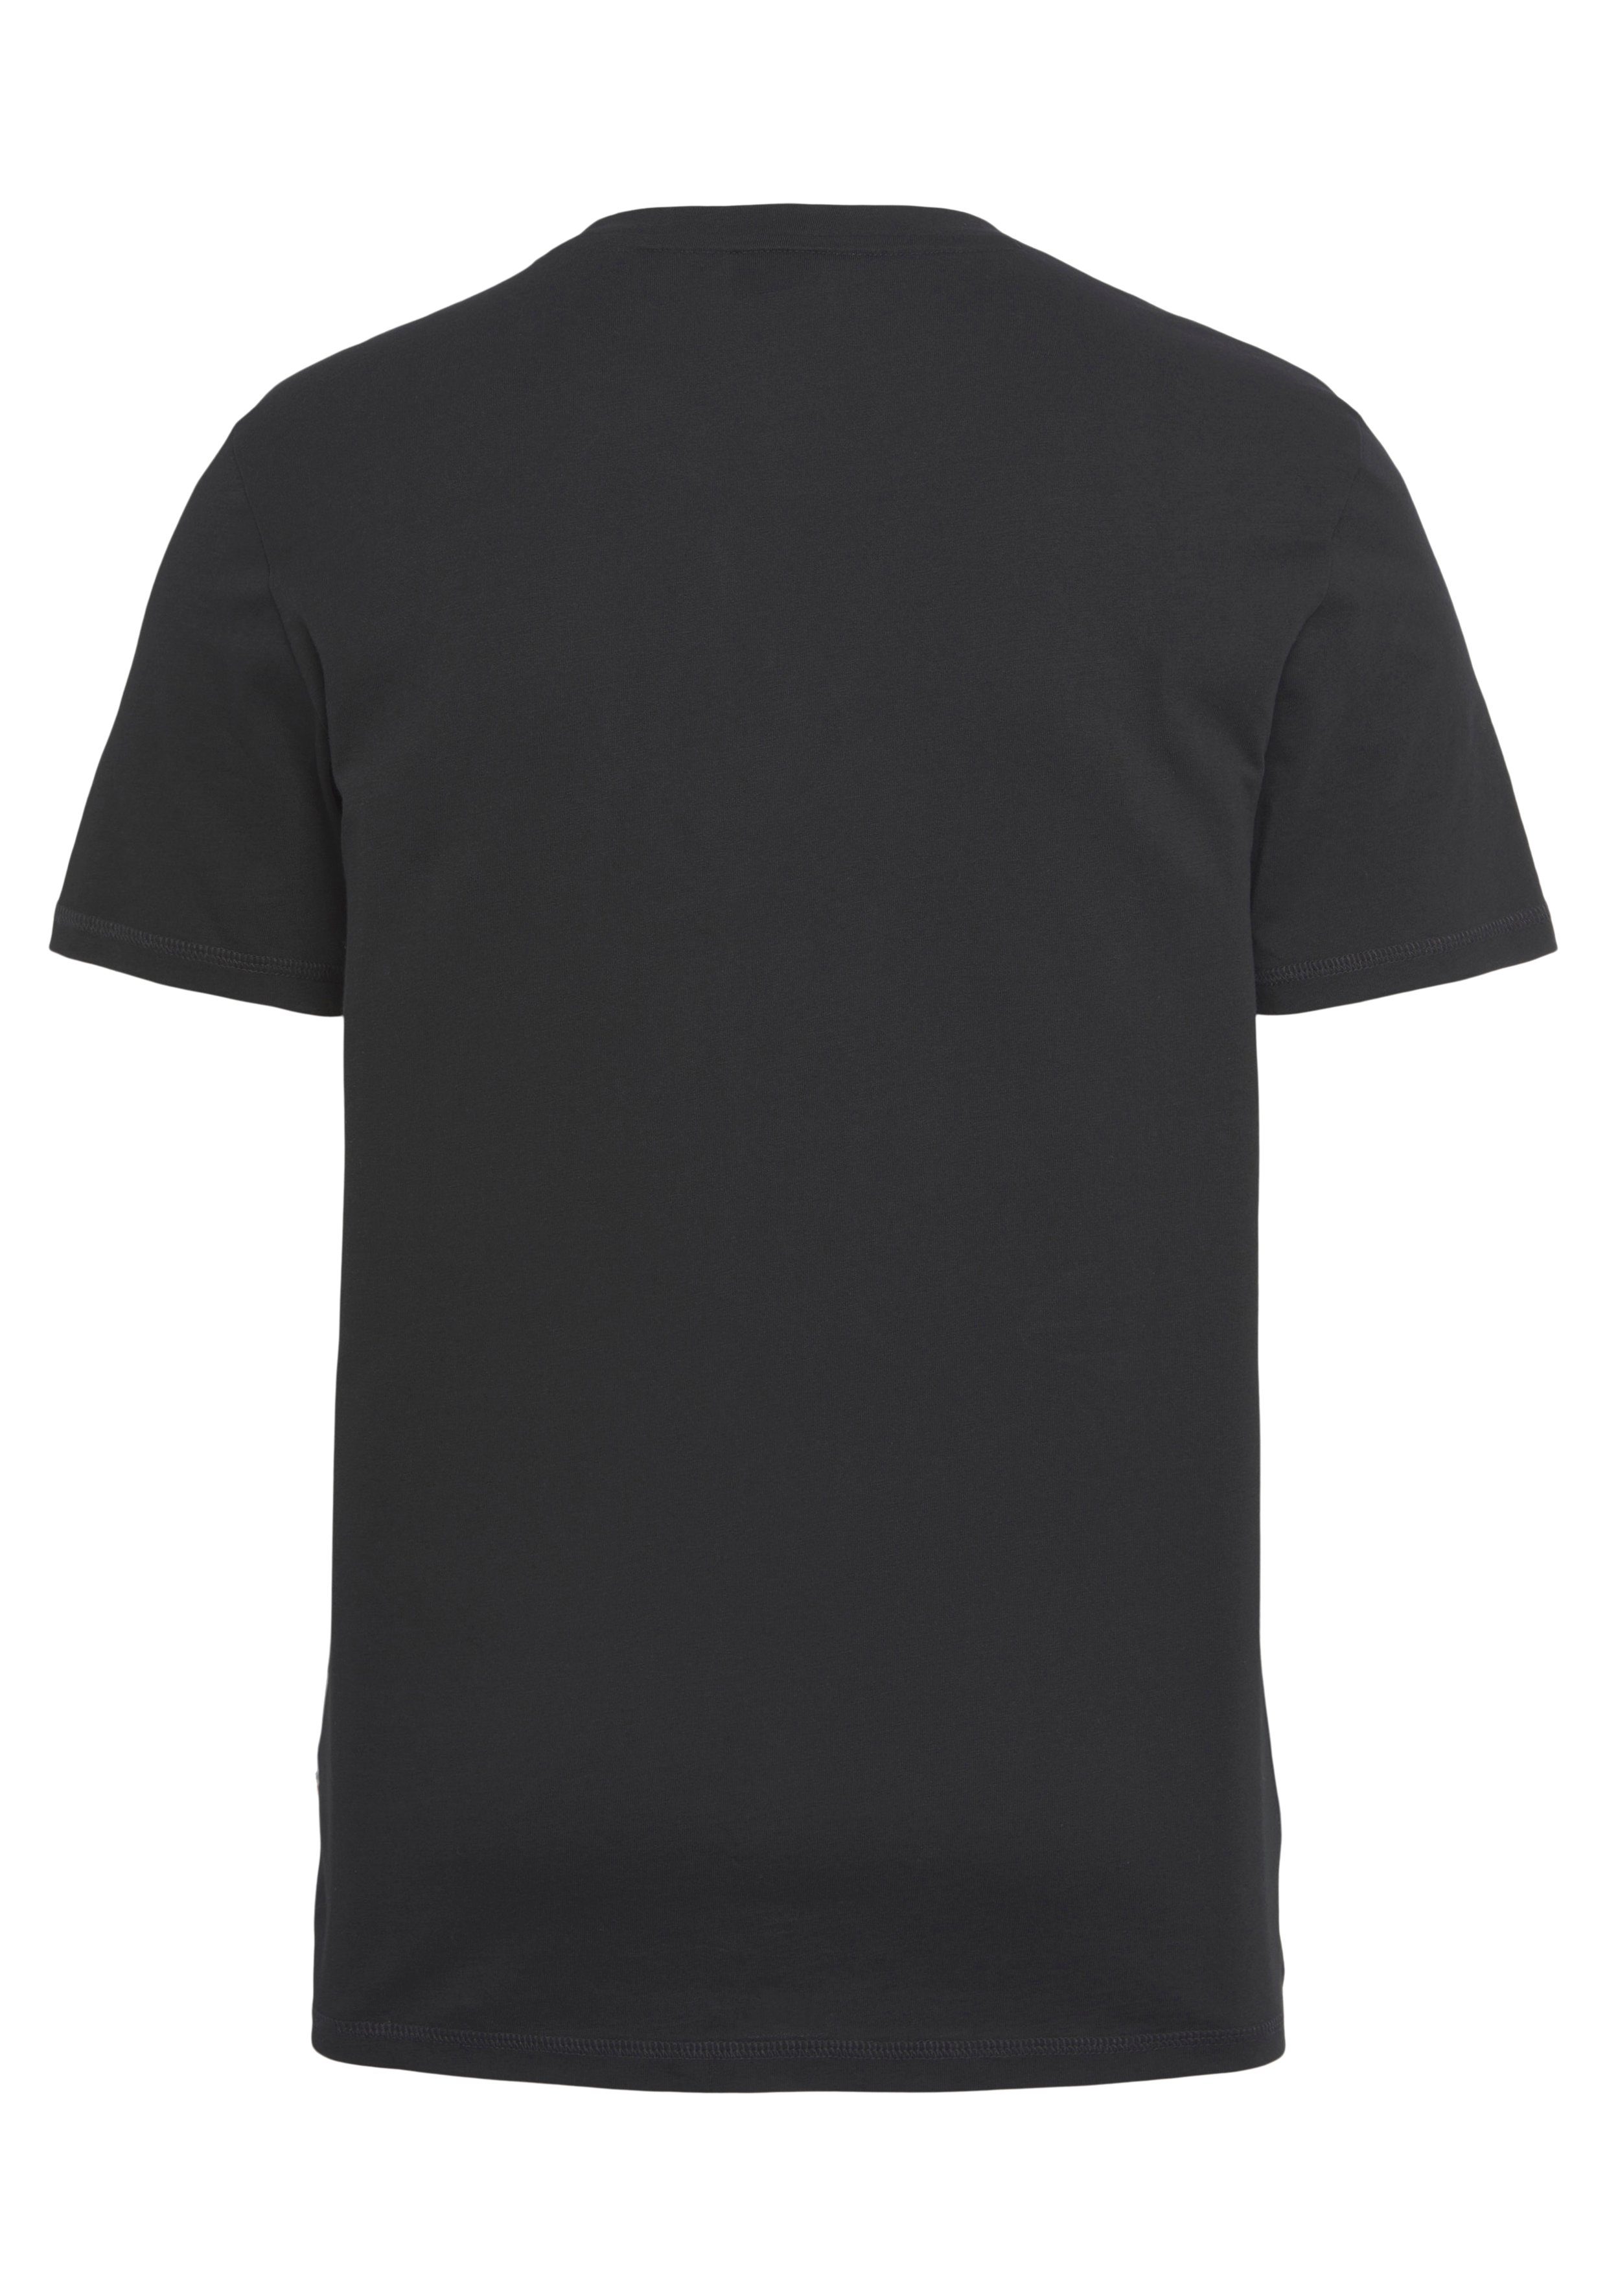 BOSS ORANGE T-Shirt TeMessage Brust Black002 auf Print großem der mit